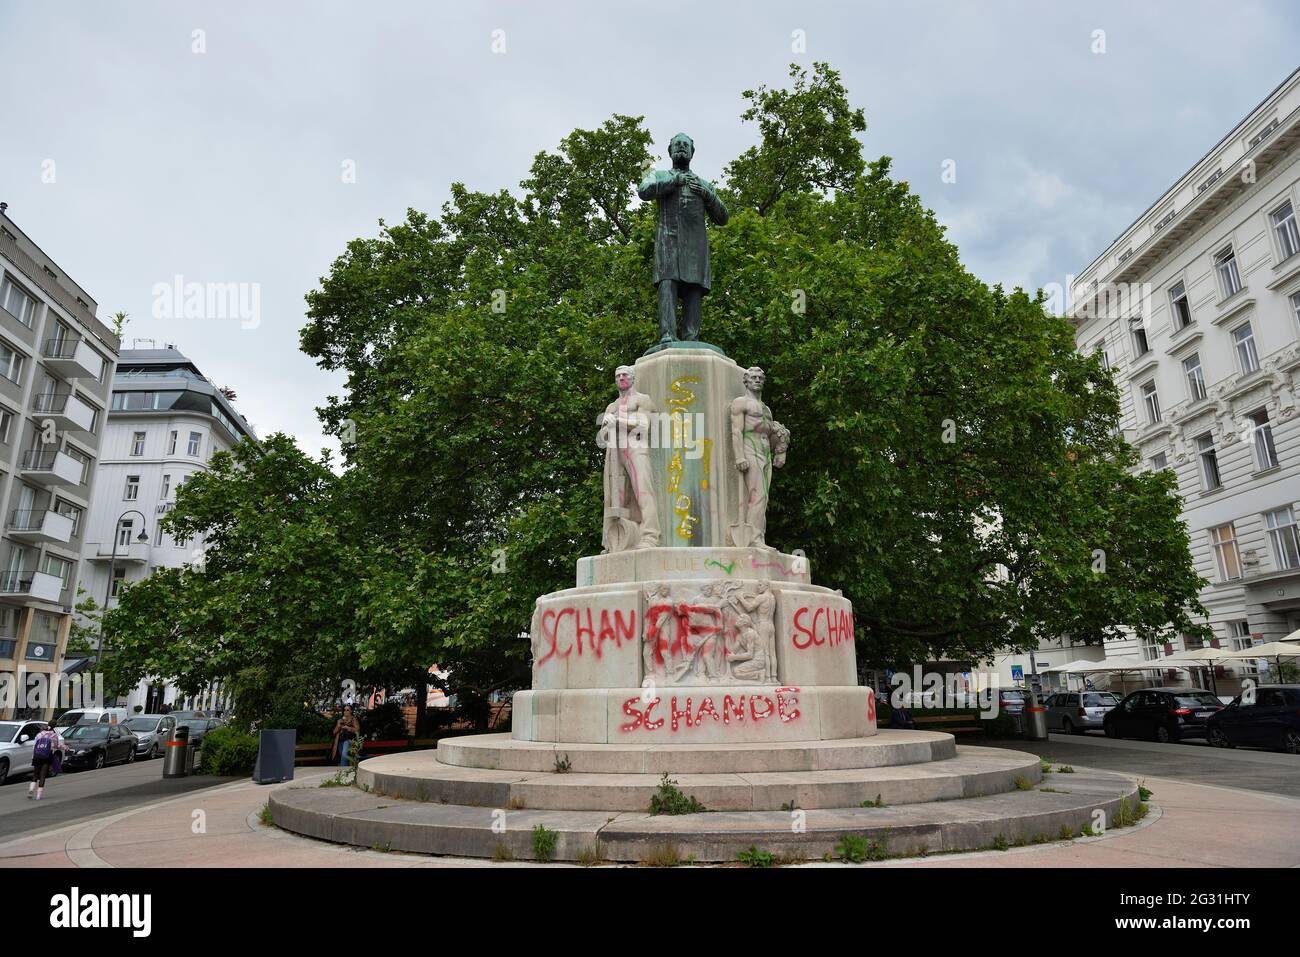 Wien, Österreich. Karl-Lueger-Gedenkstätte mit dem Wort "Schande" besprüht. Karl Lueger Bürgermeister von Wien von 1897 bis 1910. Stockfoto